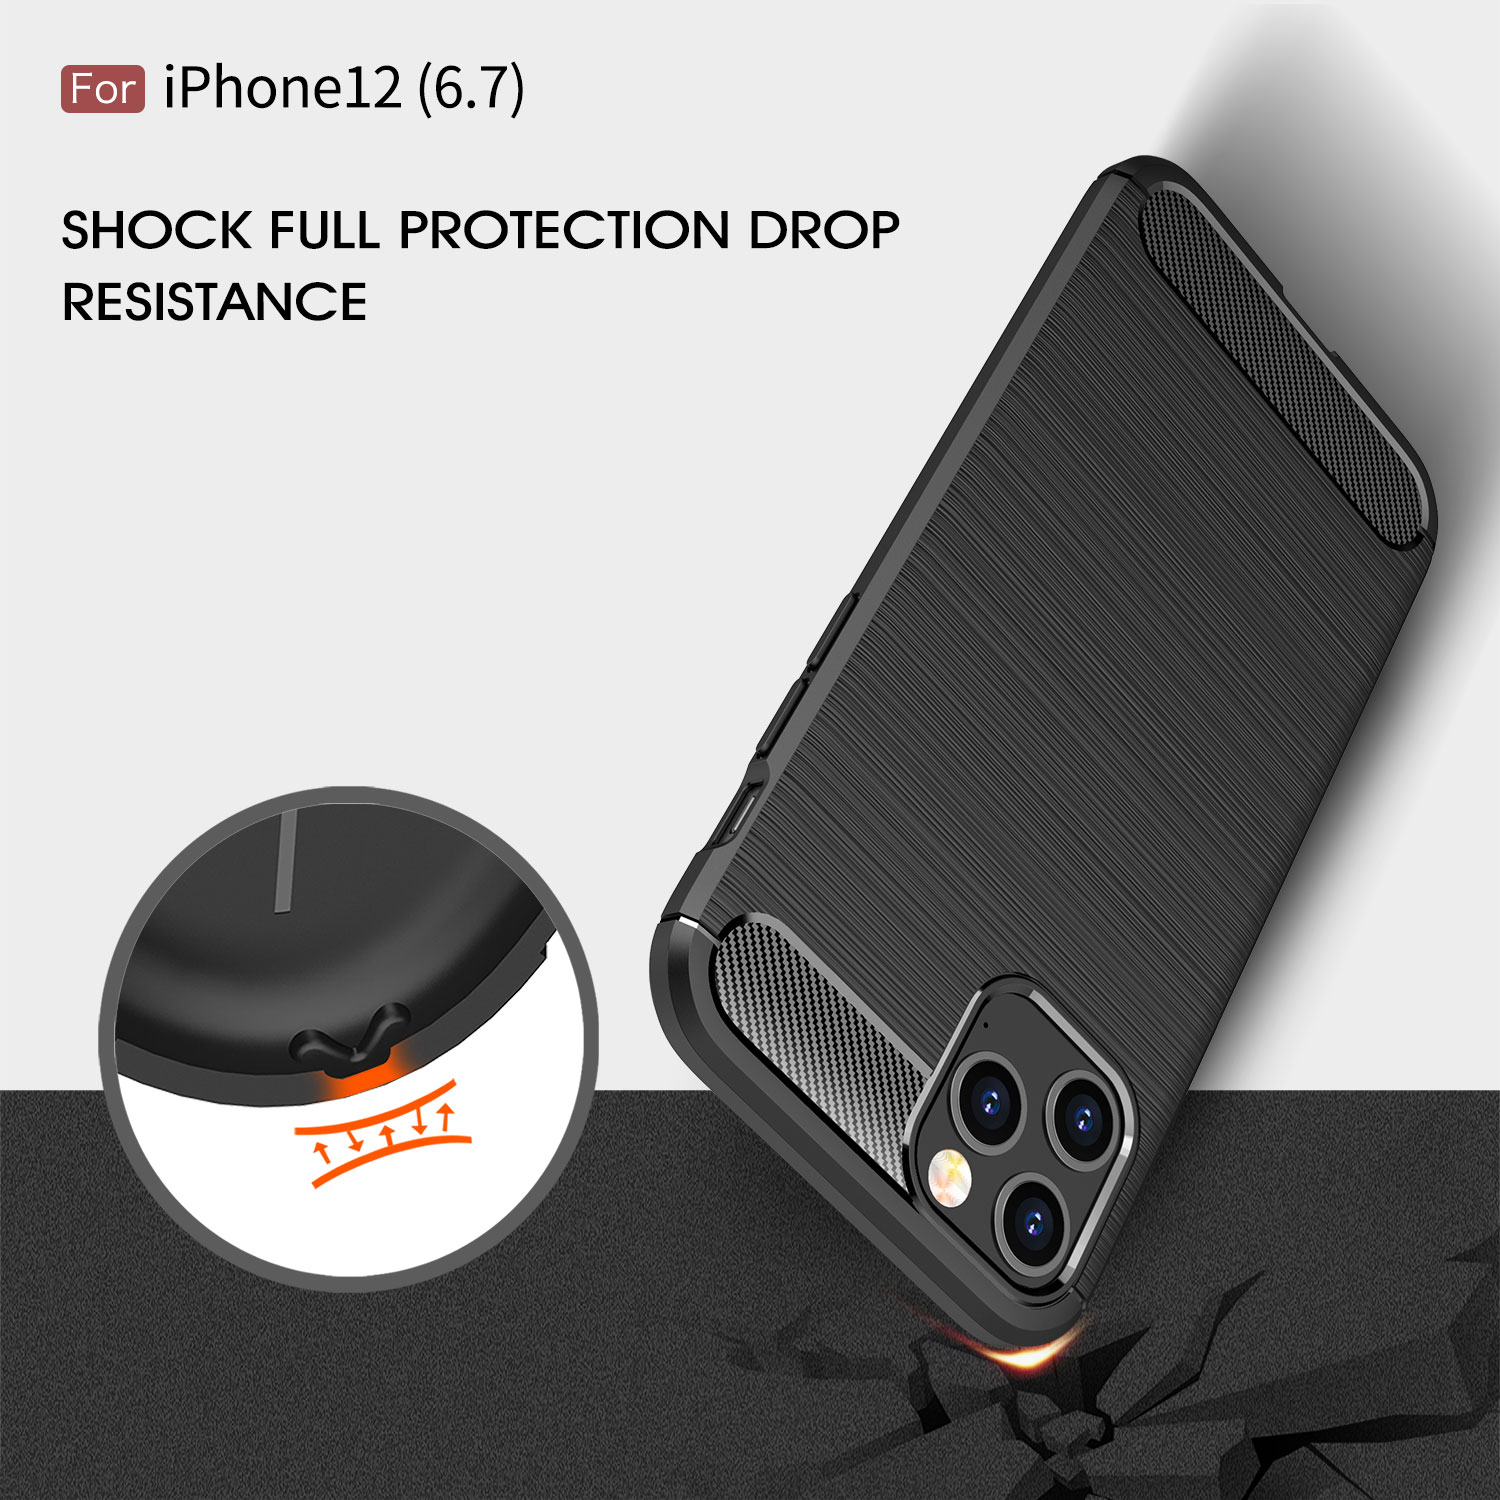 Ốp lưng chống sốc cho iPhone 12 Pro Max (6.7 inch) hiệu Likgus (chuẩn quân đội, chống va đập, chống vân tay) - Hàng nhập khẩu